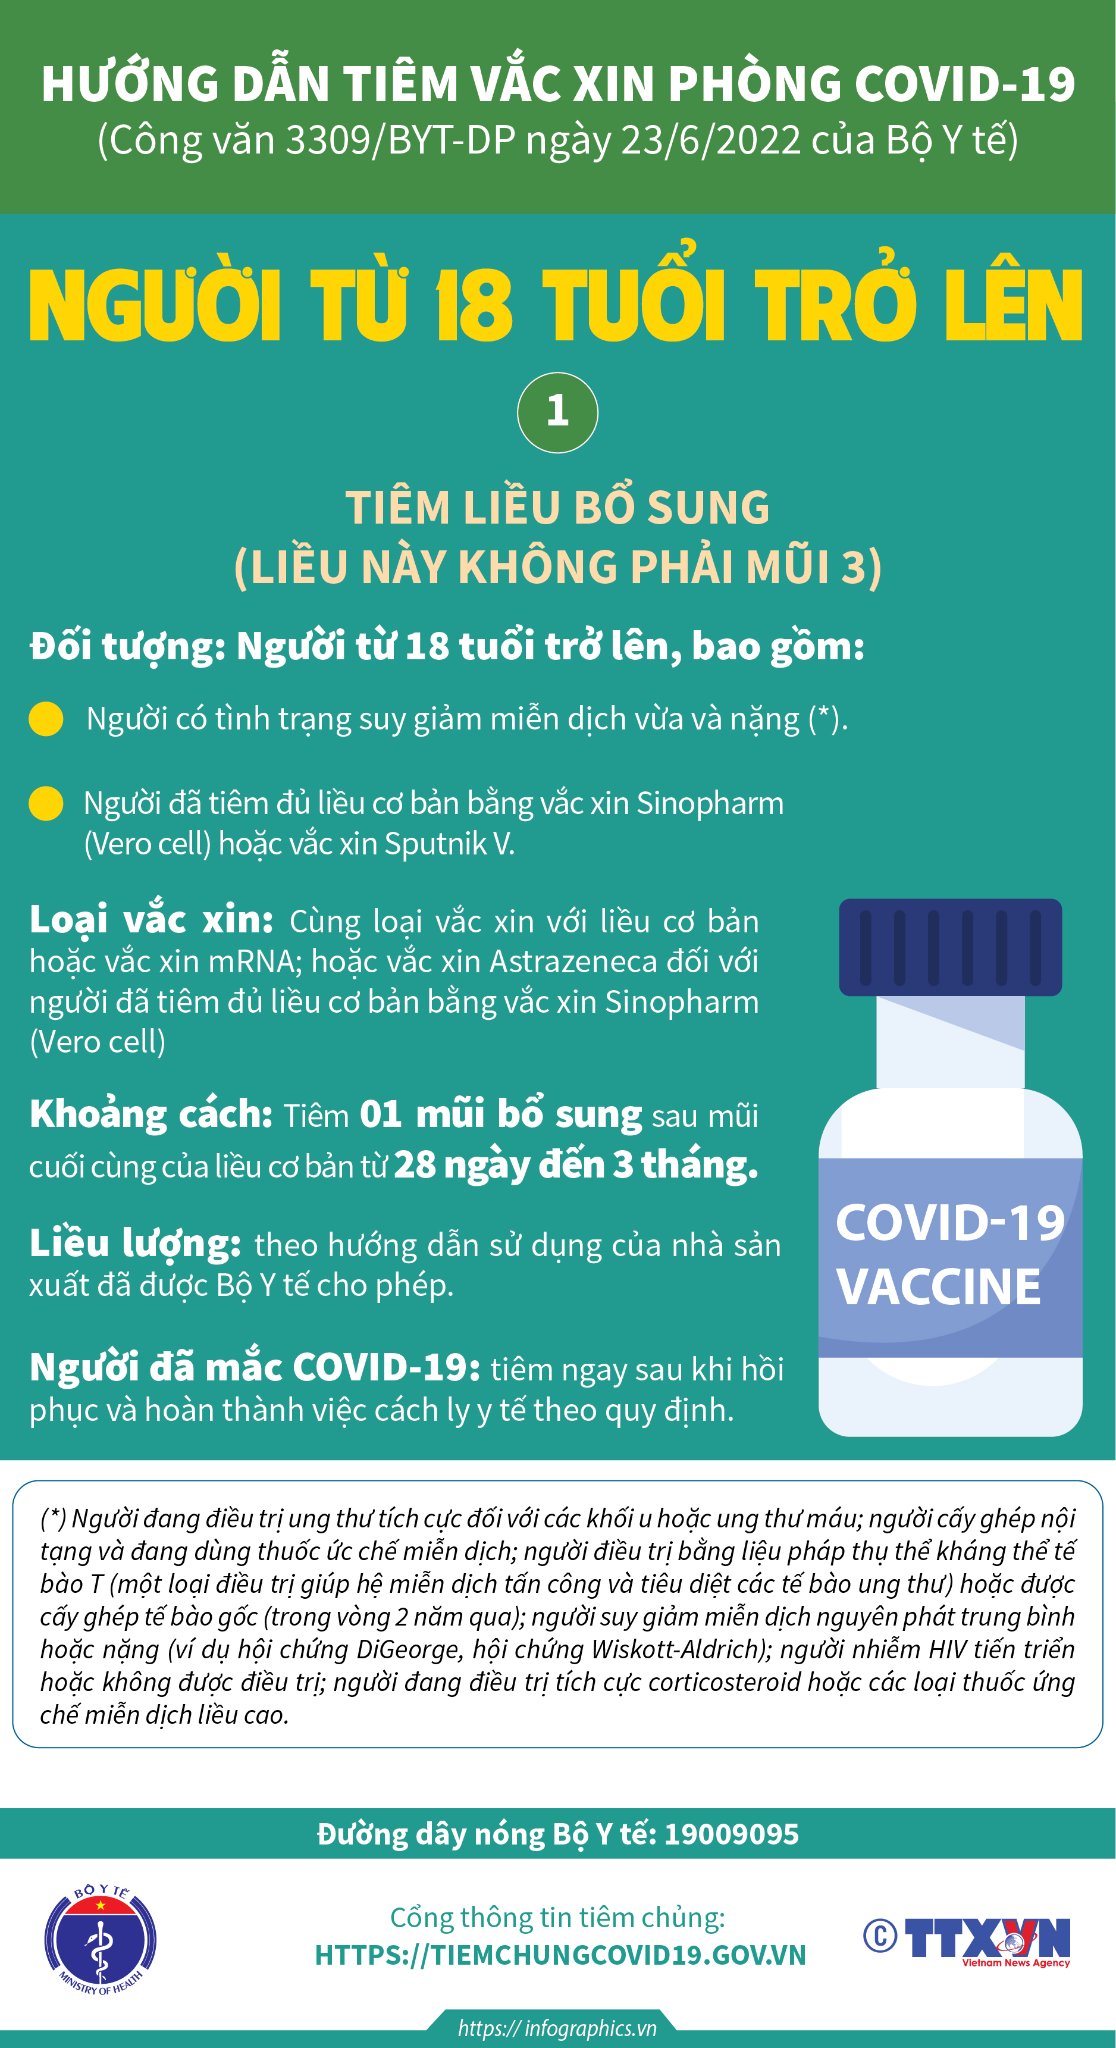 Hướng dẫn tiêm liều bổ sung, mũi 3, mũi 4 vaccine COVID-19